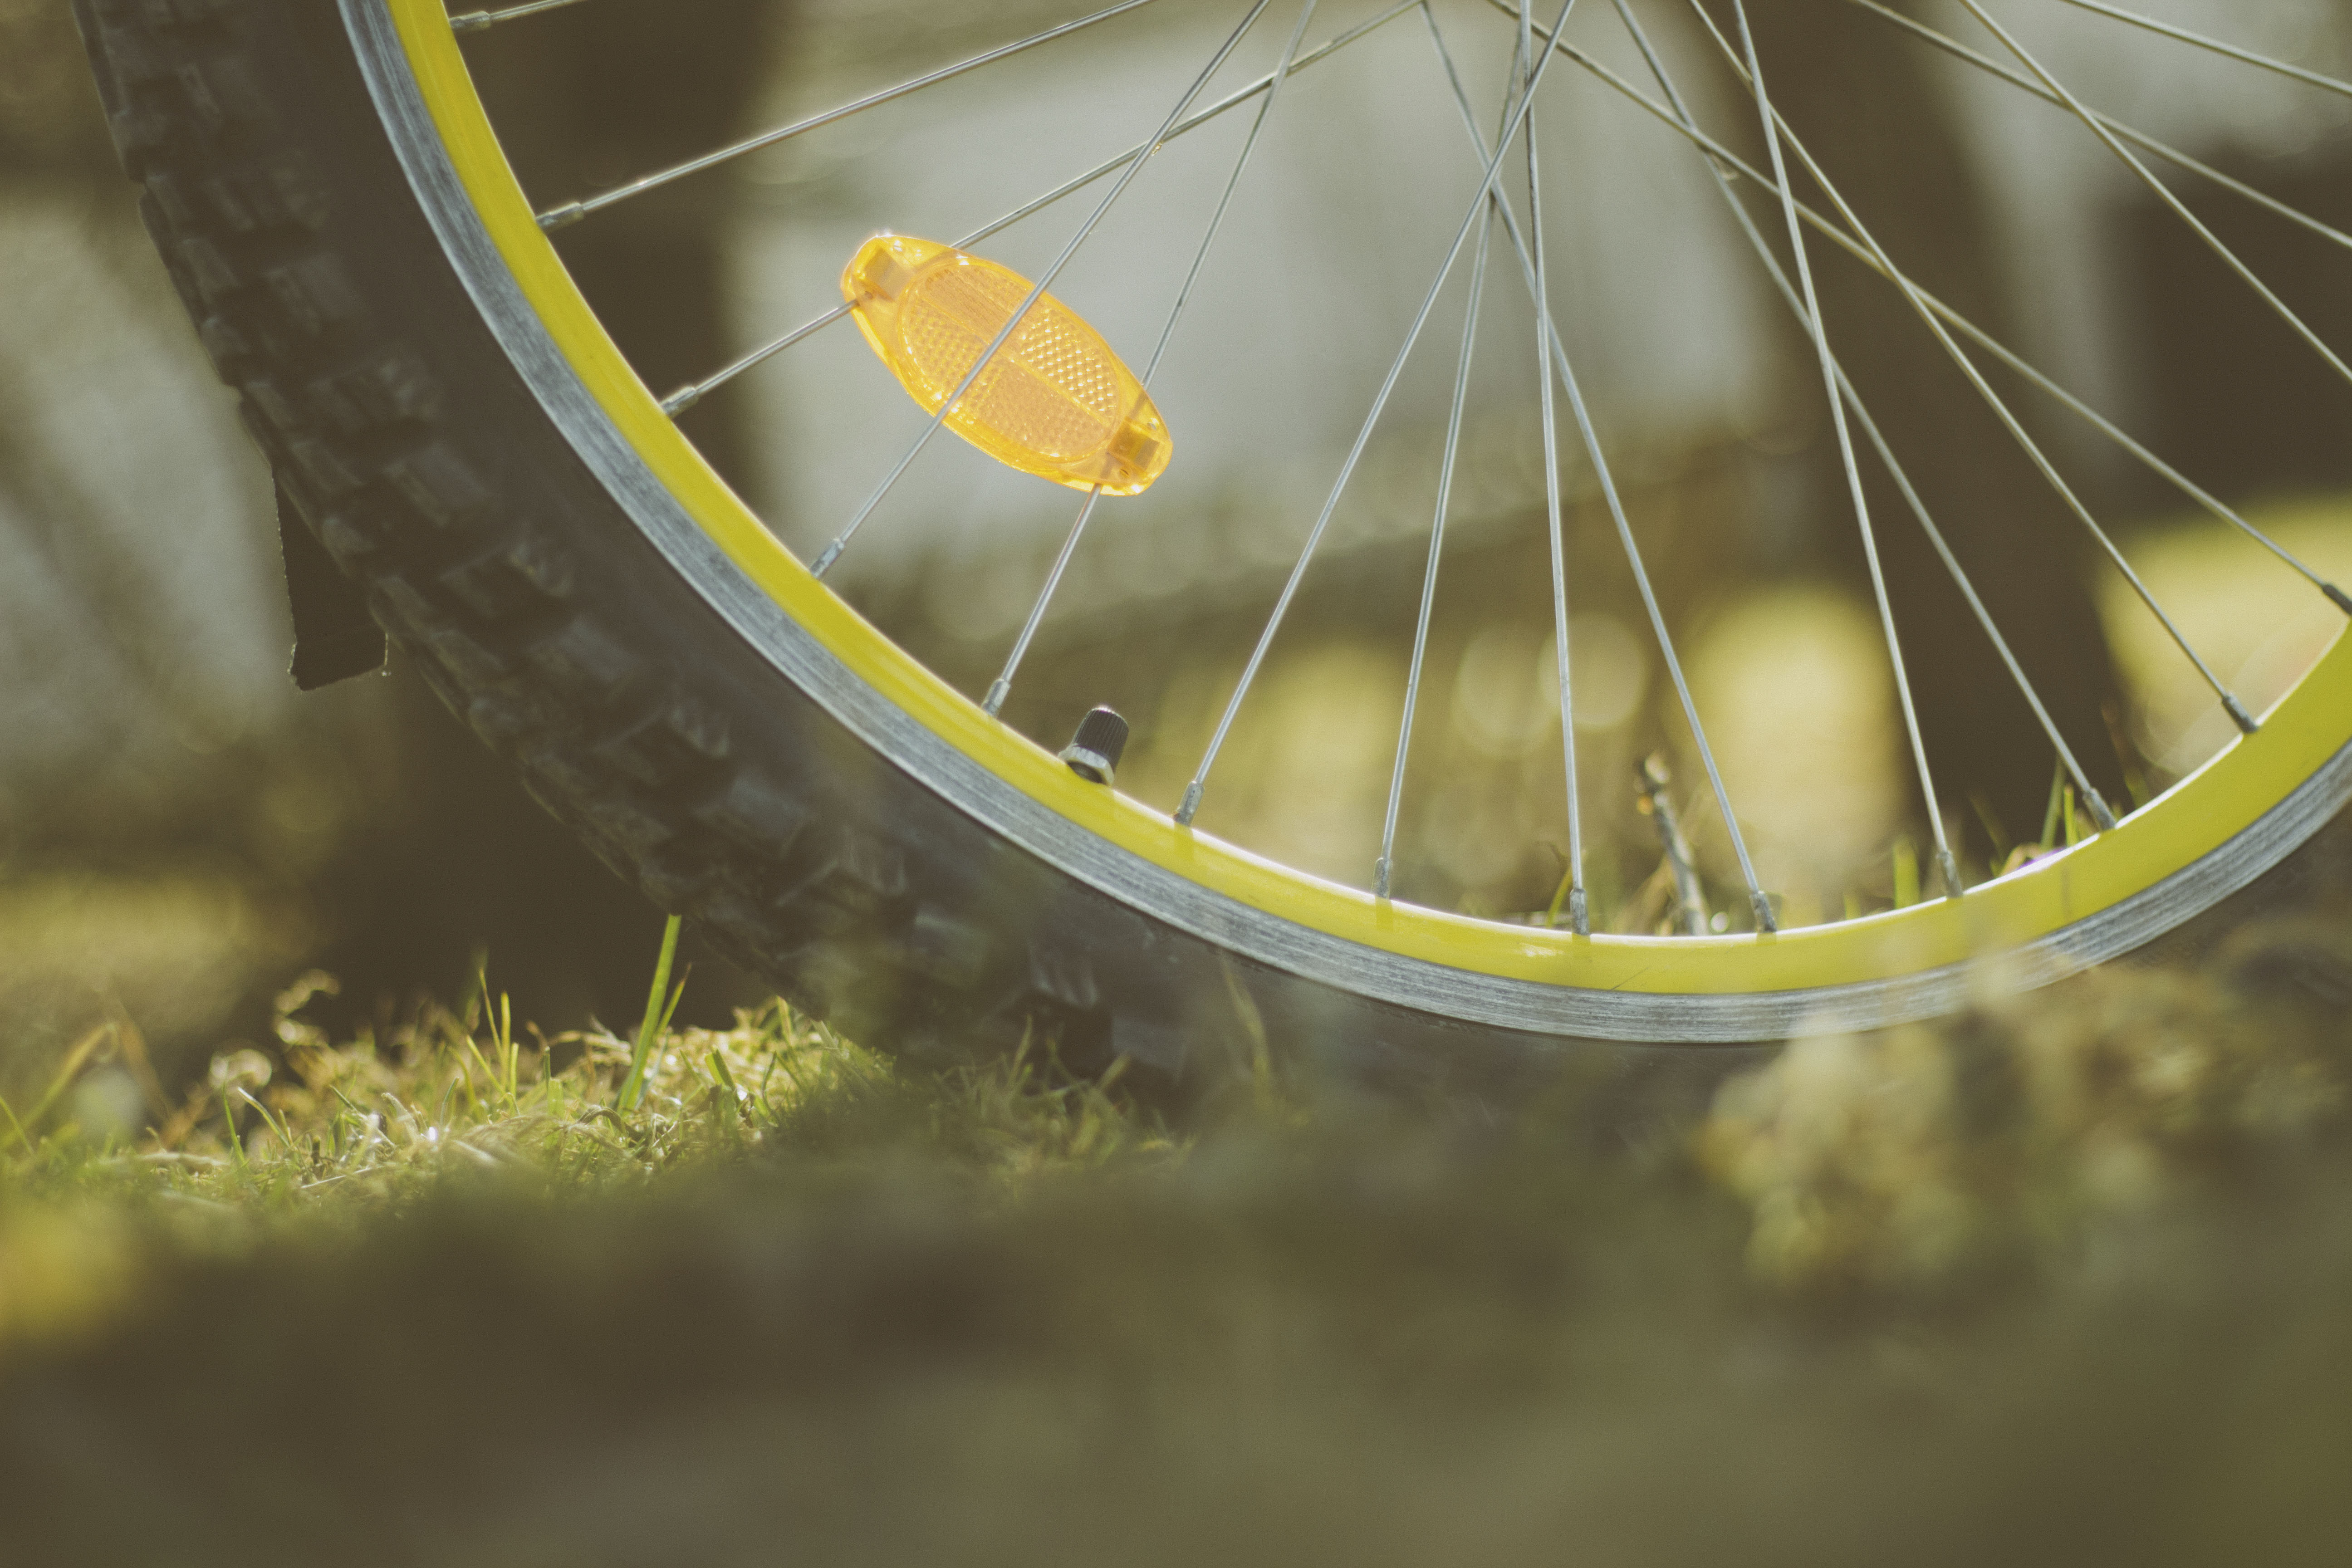 miscellanea, miscellaneous, wheel, bicycle, spokes